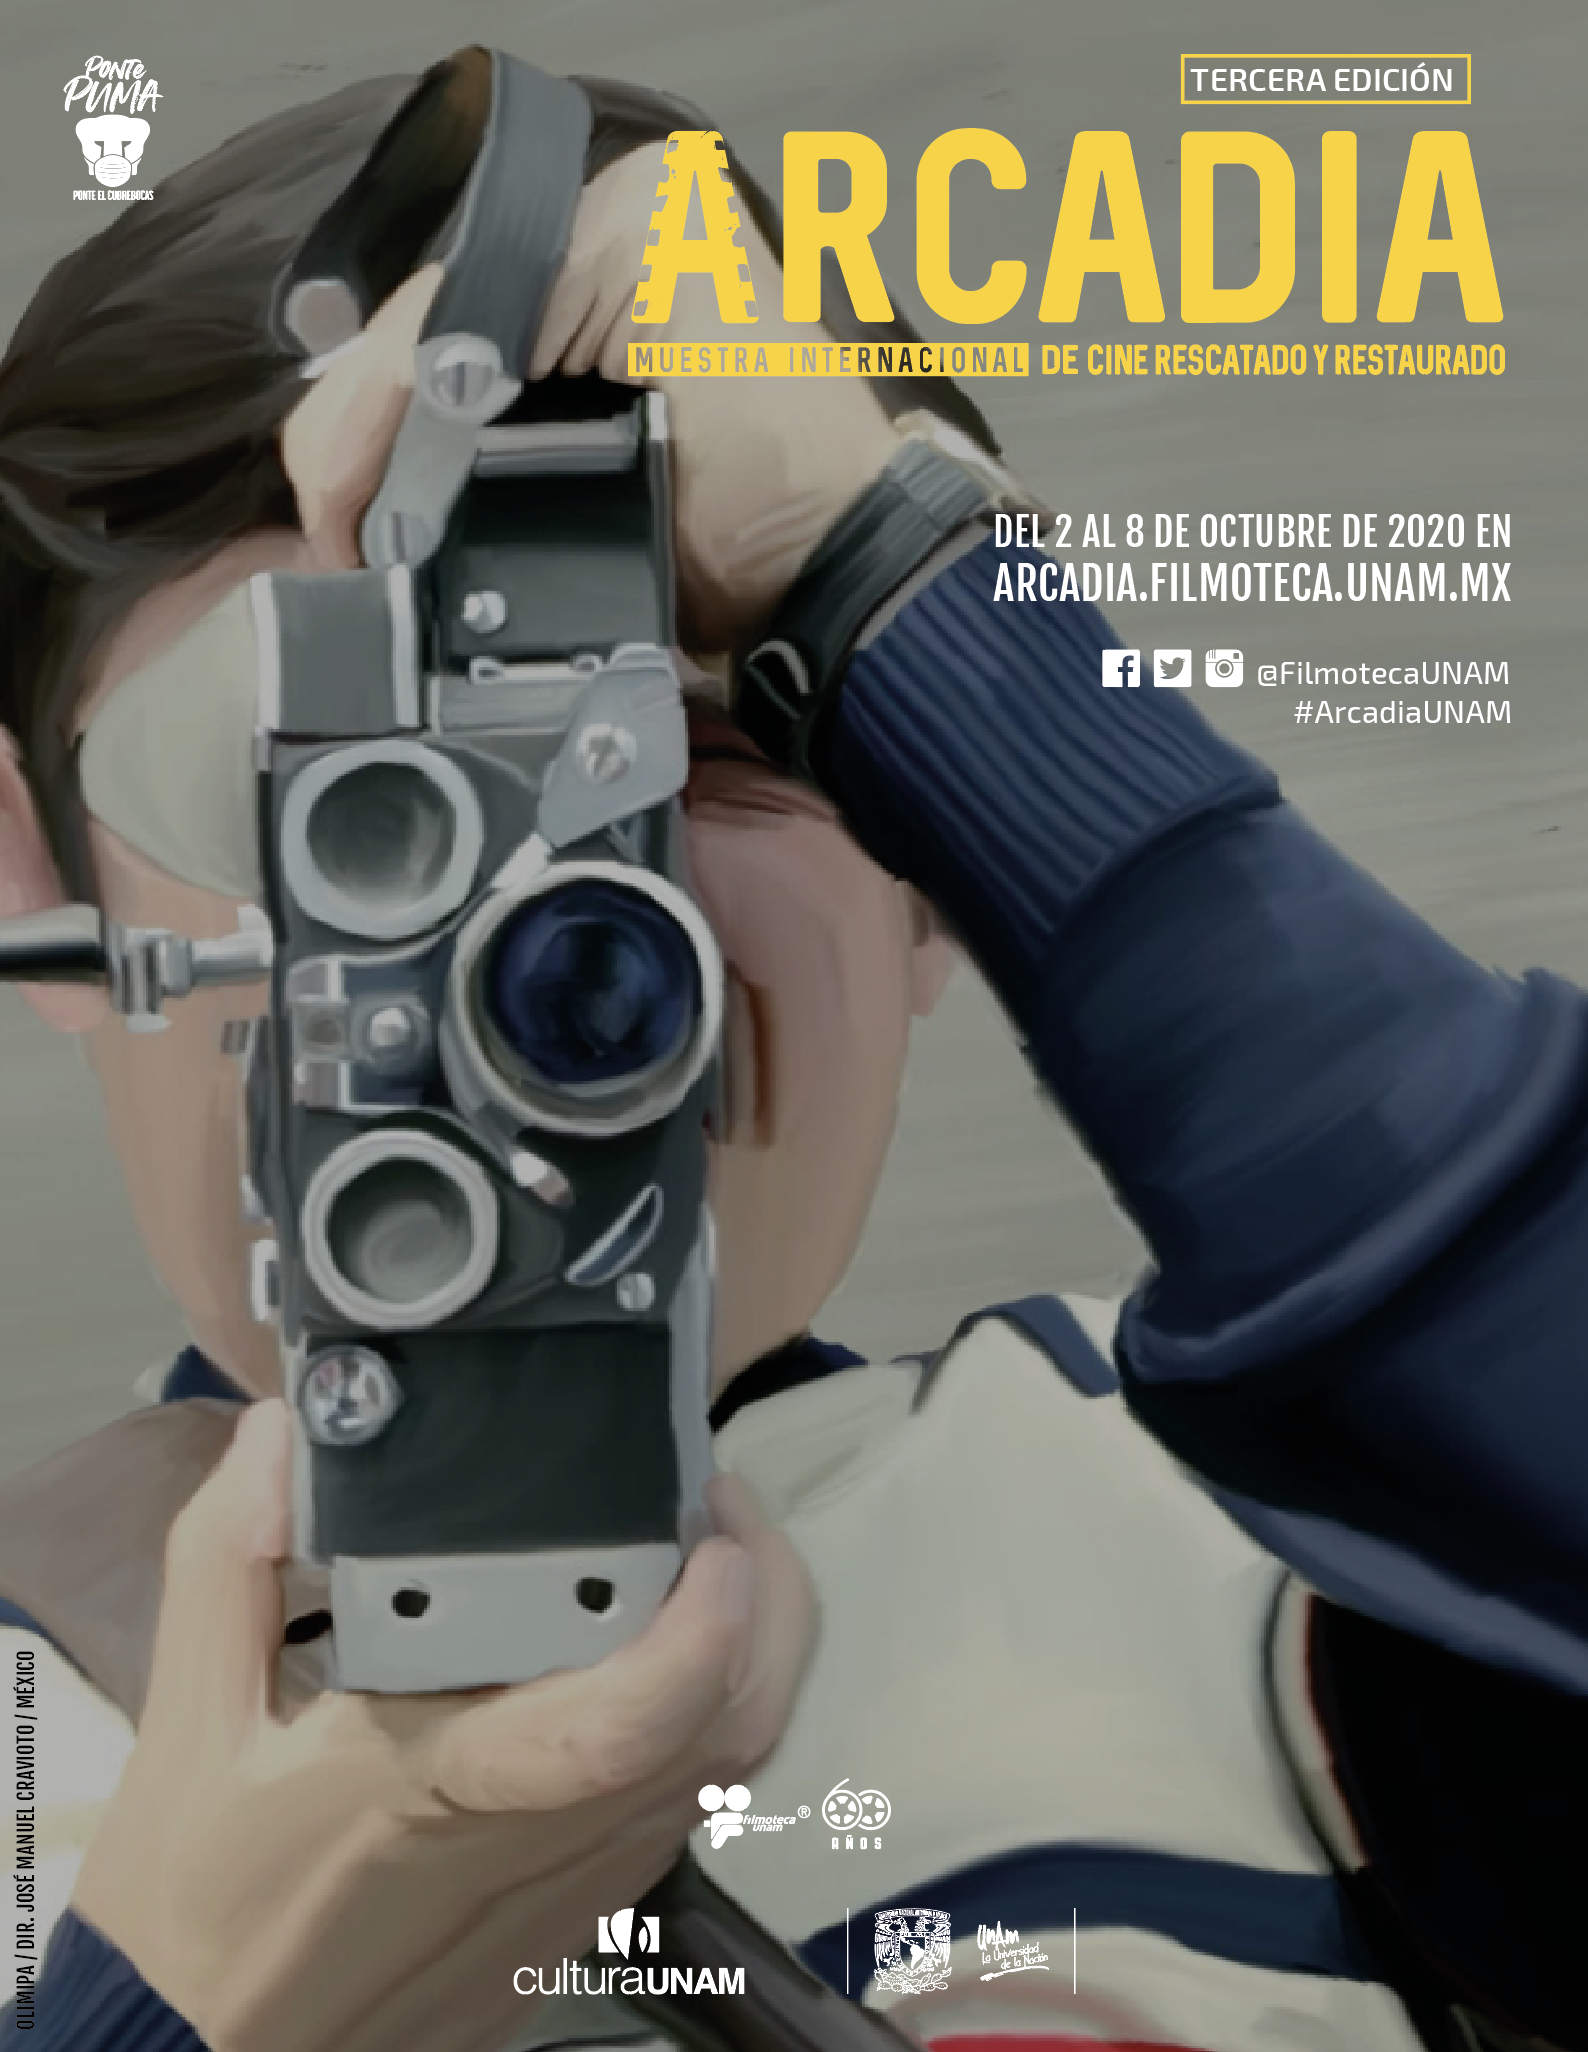 Mantener viva la memoria en la 3a. edición de Arcadia UNAM, Muestra Internacional de Cine Rescatado y Restaurado del 2 al 8 de octubre